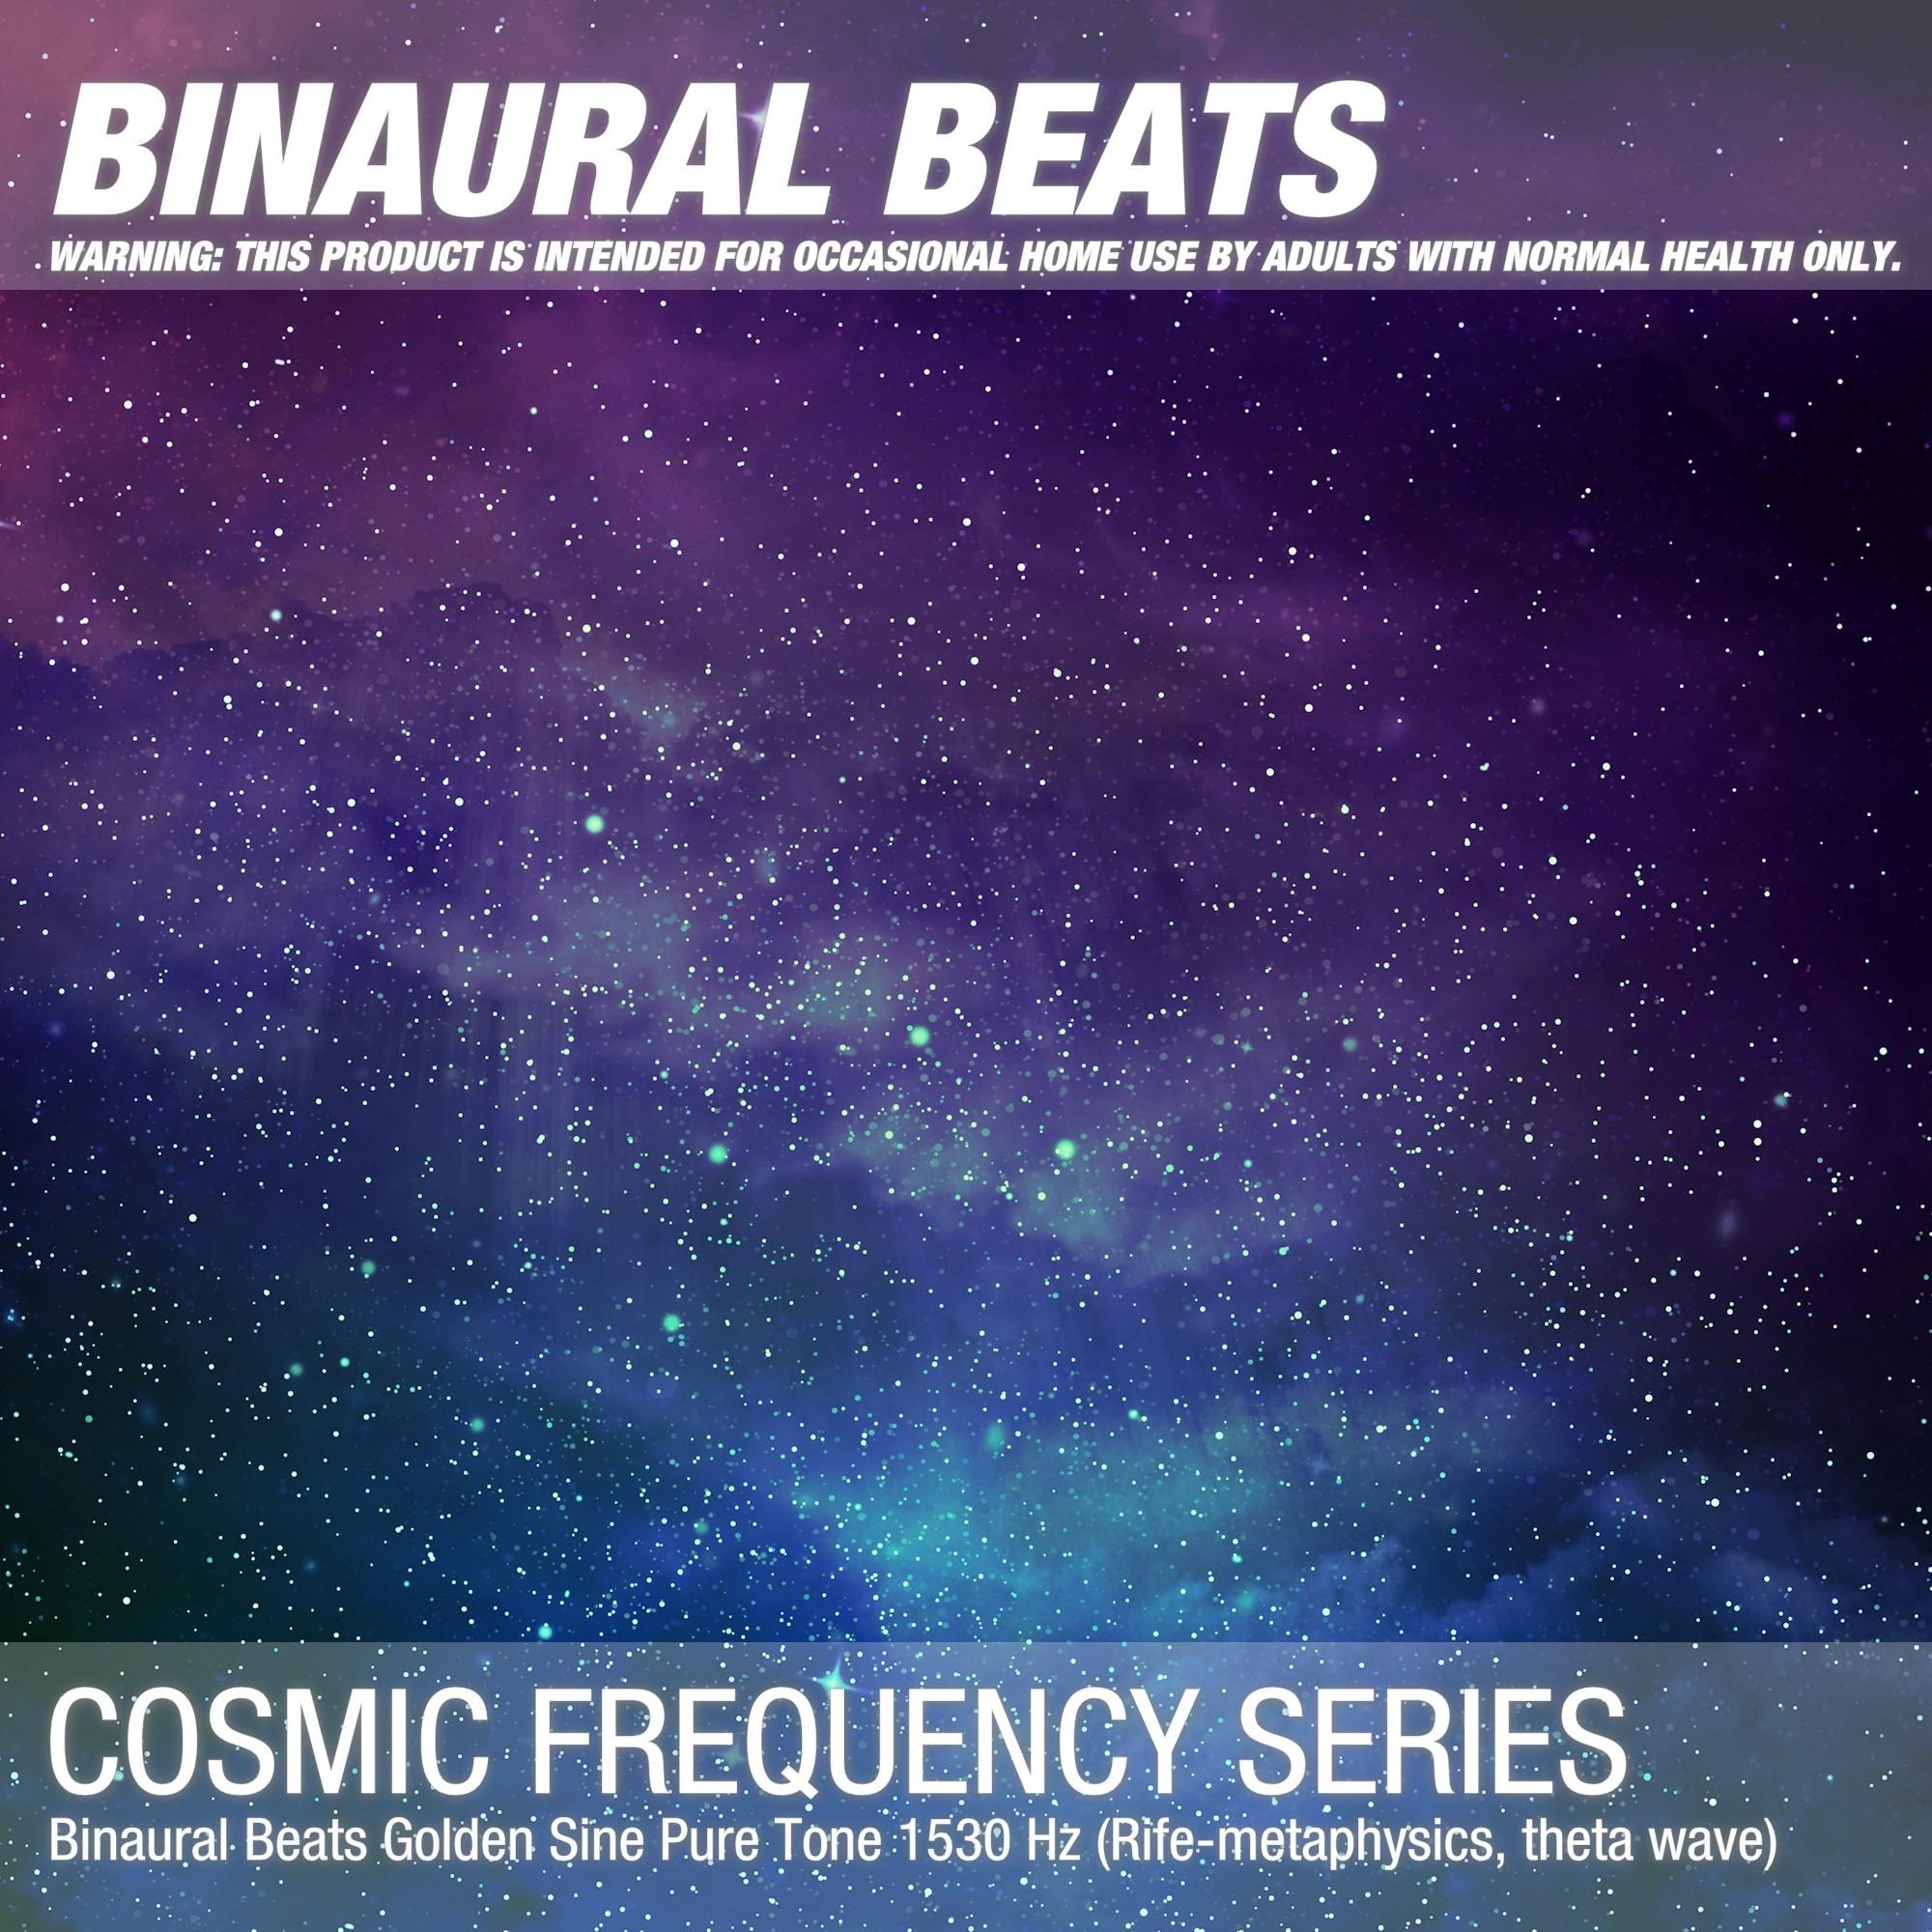 Binaural Beats Golden Sine Pure Tone 1530 Hz (Rife-metaphysics, theta wave)